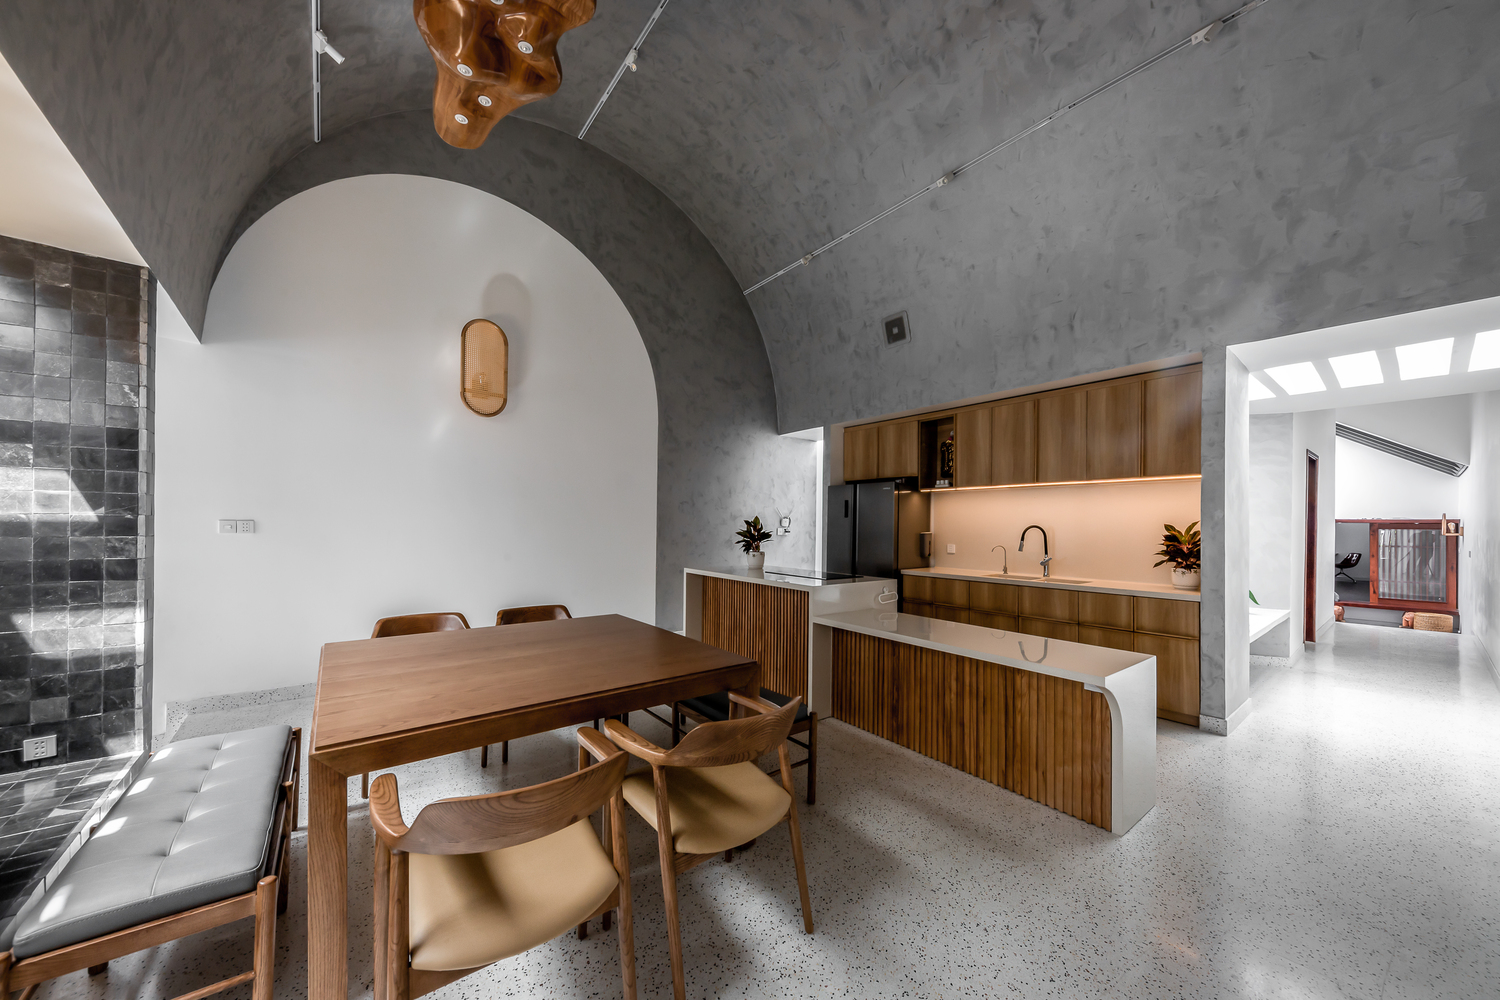 hình ảnh toàn cảnh phòng bếp ăn trong nhà ống với trần bê tông xám hình vòm, bàn ghế gỗ